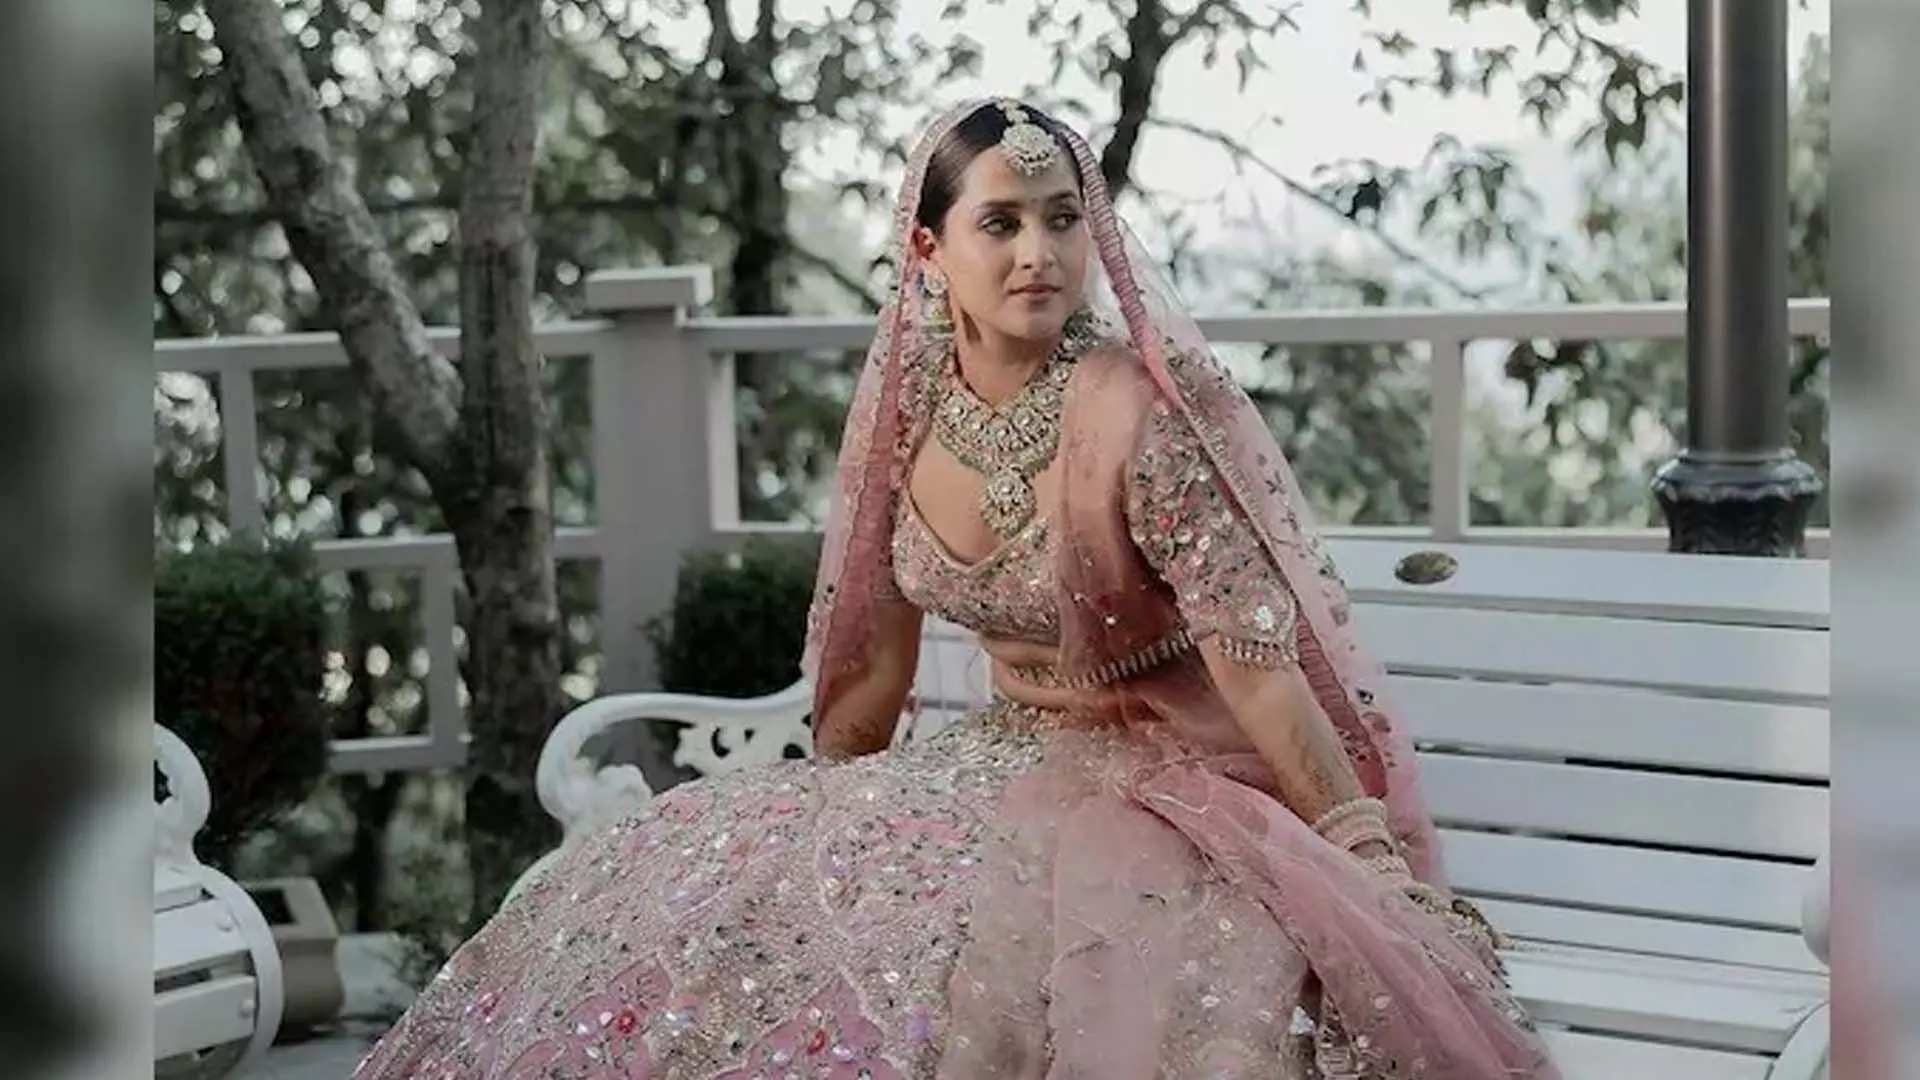 लव आज कल 2 की अभिनेत्री आरुषि शर्मा शादी की अनदेखी तस्वीरों में एक खुश दुल्हन नजर आ रही